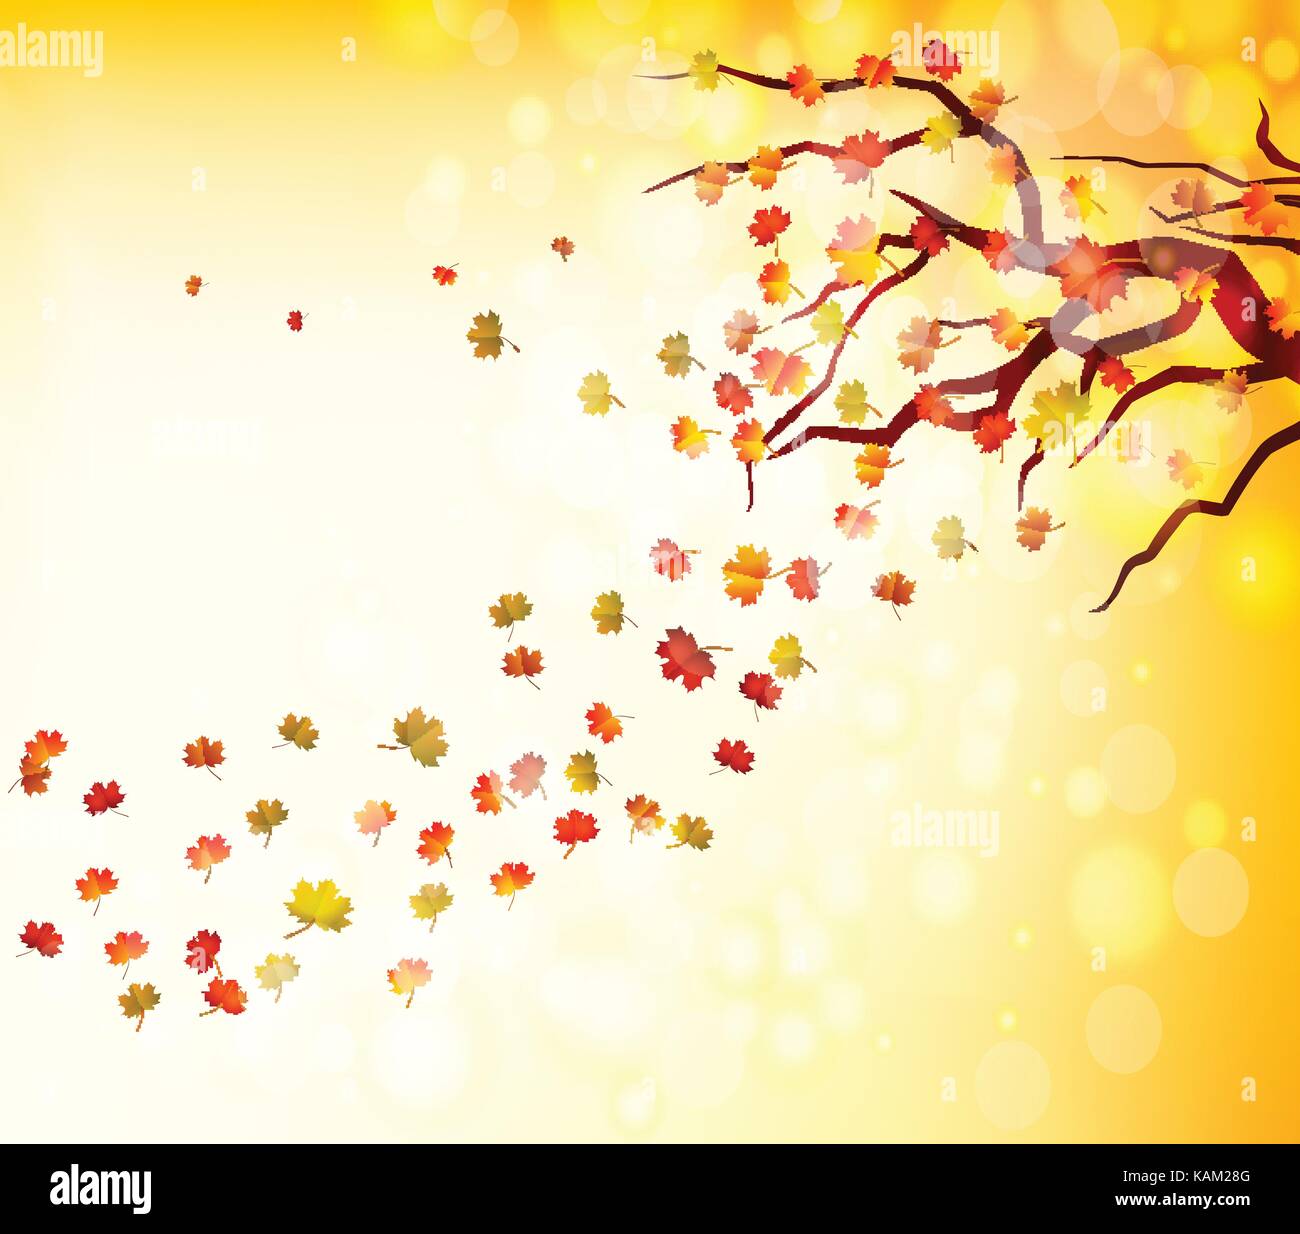 Bonjour automne illustration d'une forêt en automne avec les feuilles tomber Illustration de Vecteur